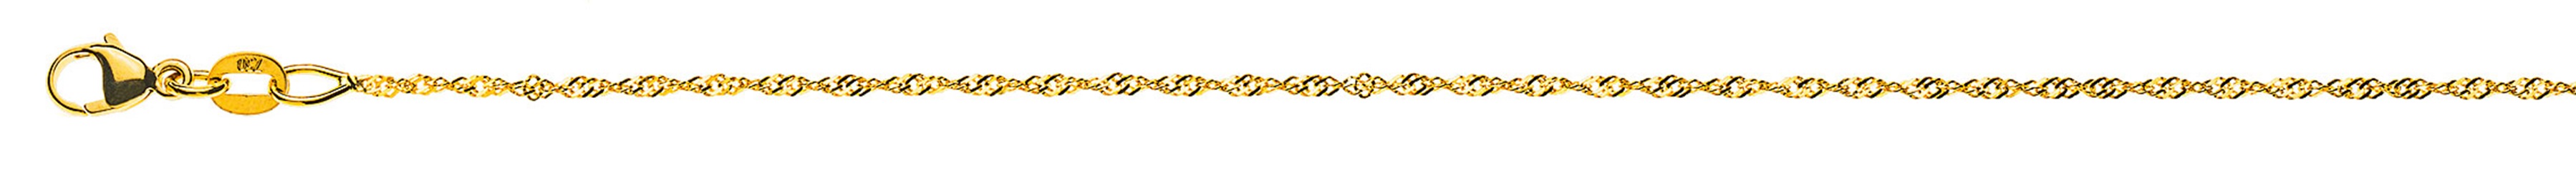 AURONOS Prestige Necklace Yellow Gold 18K Singapore Chain 55cm 1.2mm